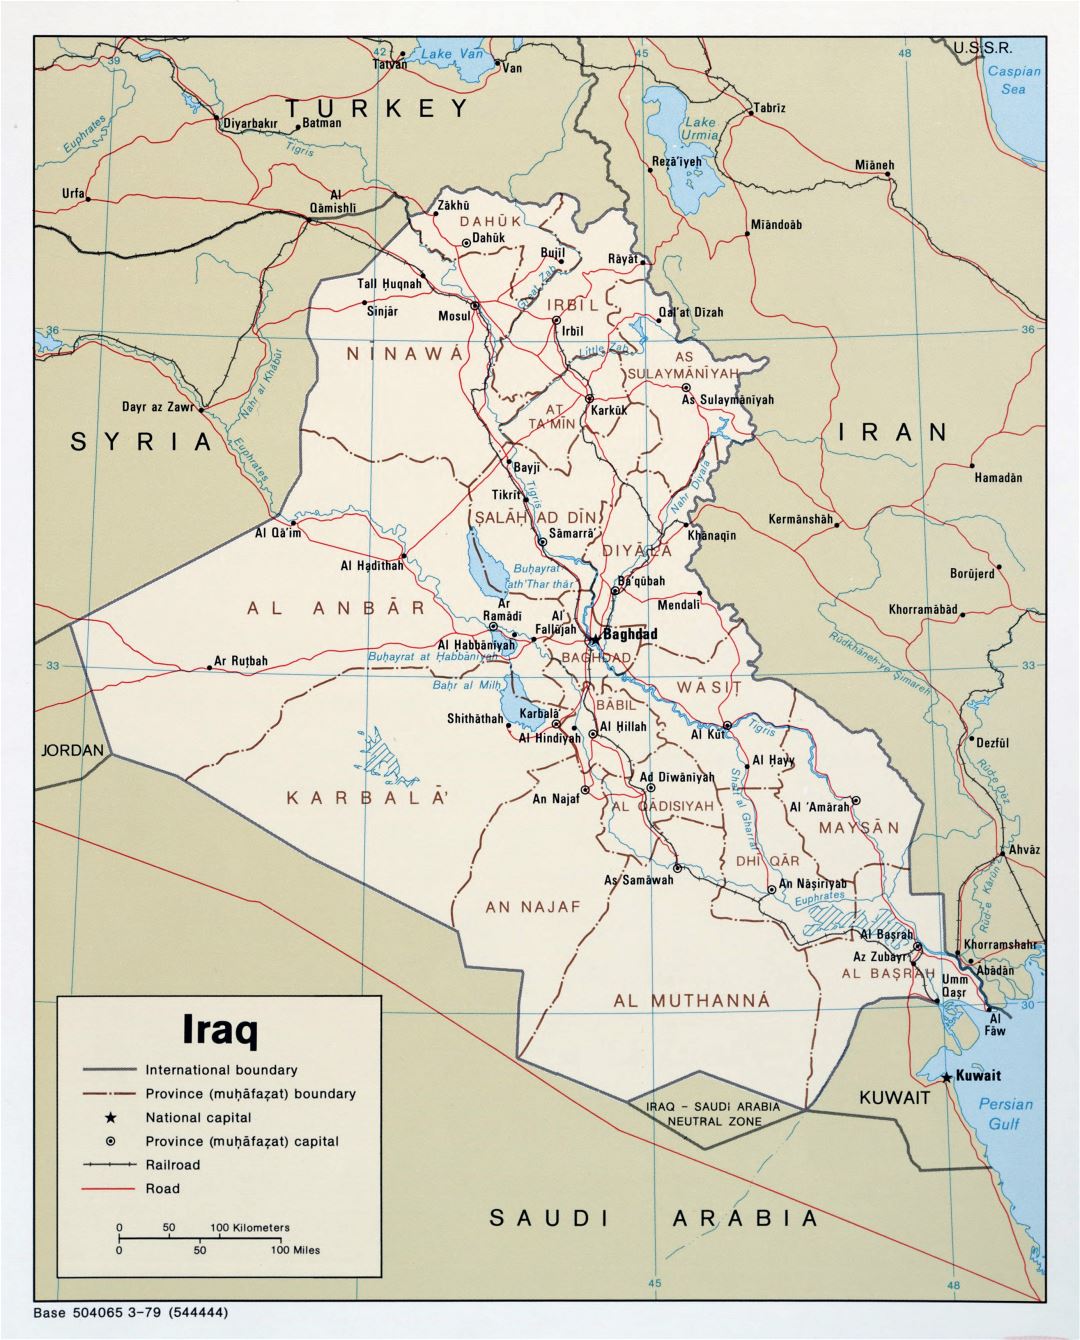 Grande detallado mapa político y administrativo de Iraq con carreteras, ferrocarriles y principales ciudades - 1979